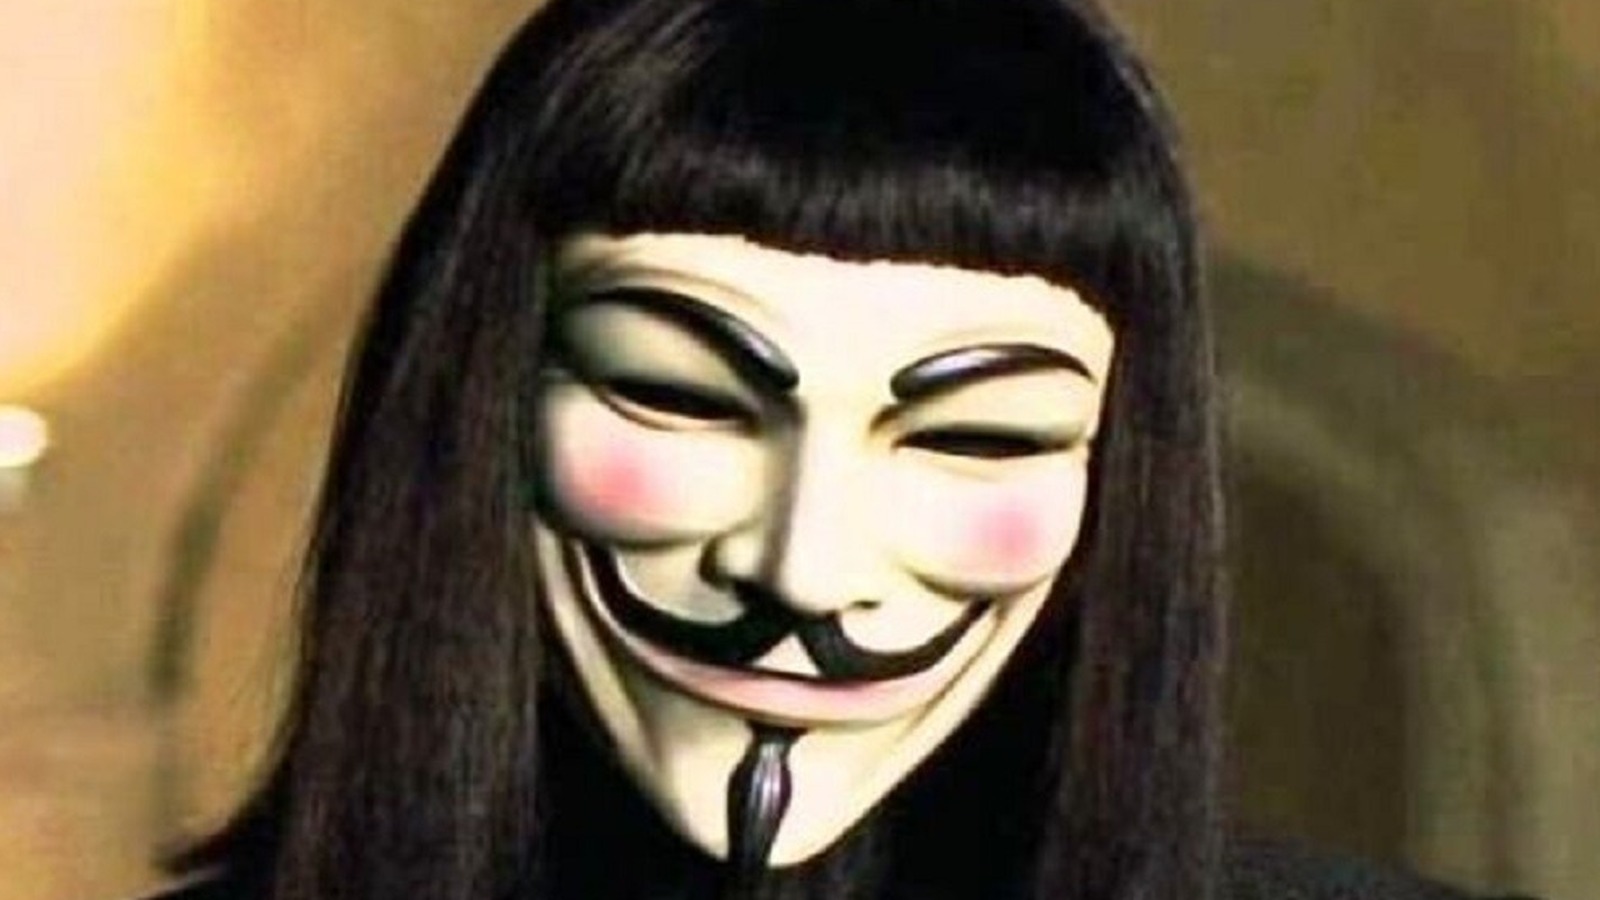 The mask of Hugo Weaving in V for Vendetta